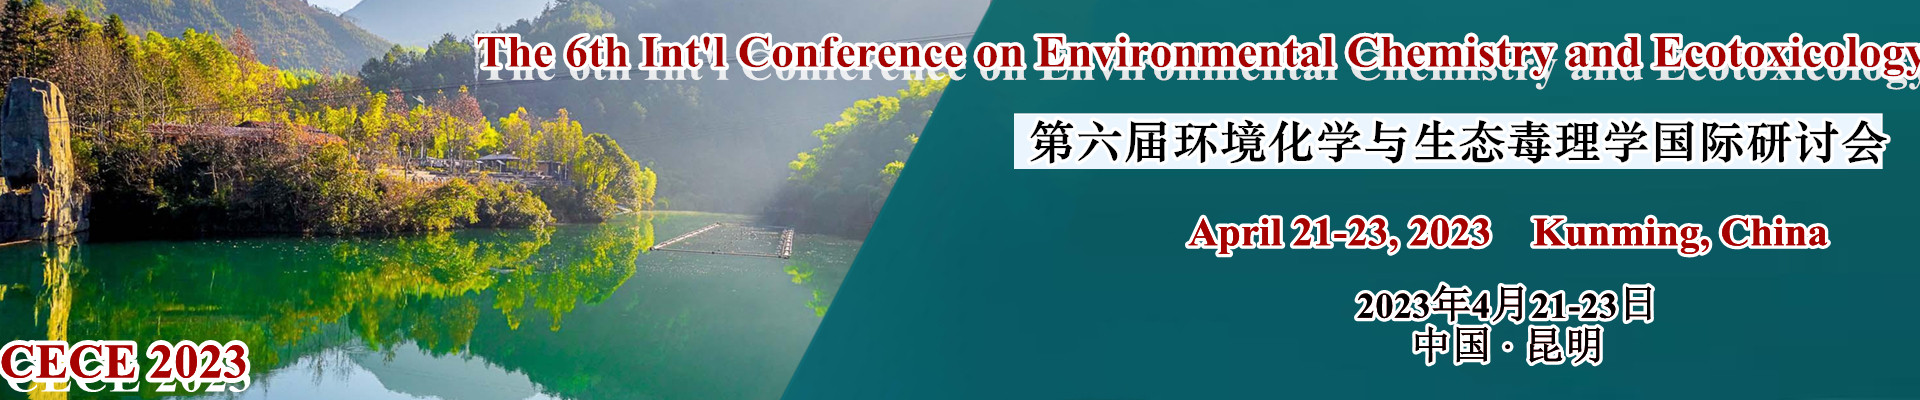 第六届环境化学与生态毒理学国际研讨会(CECE 2023)